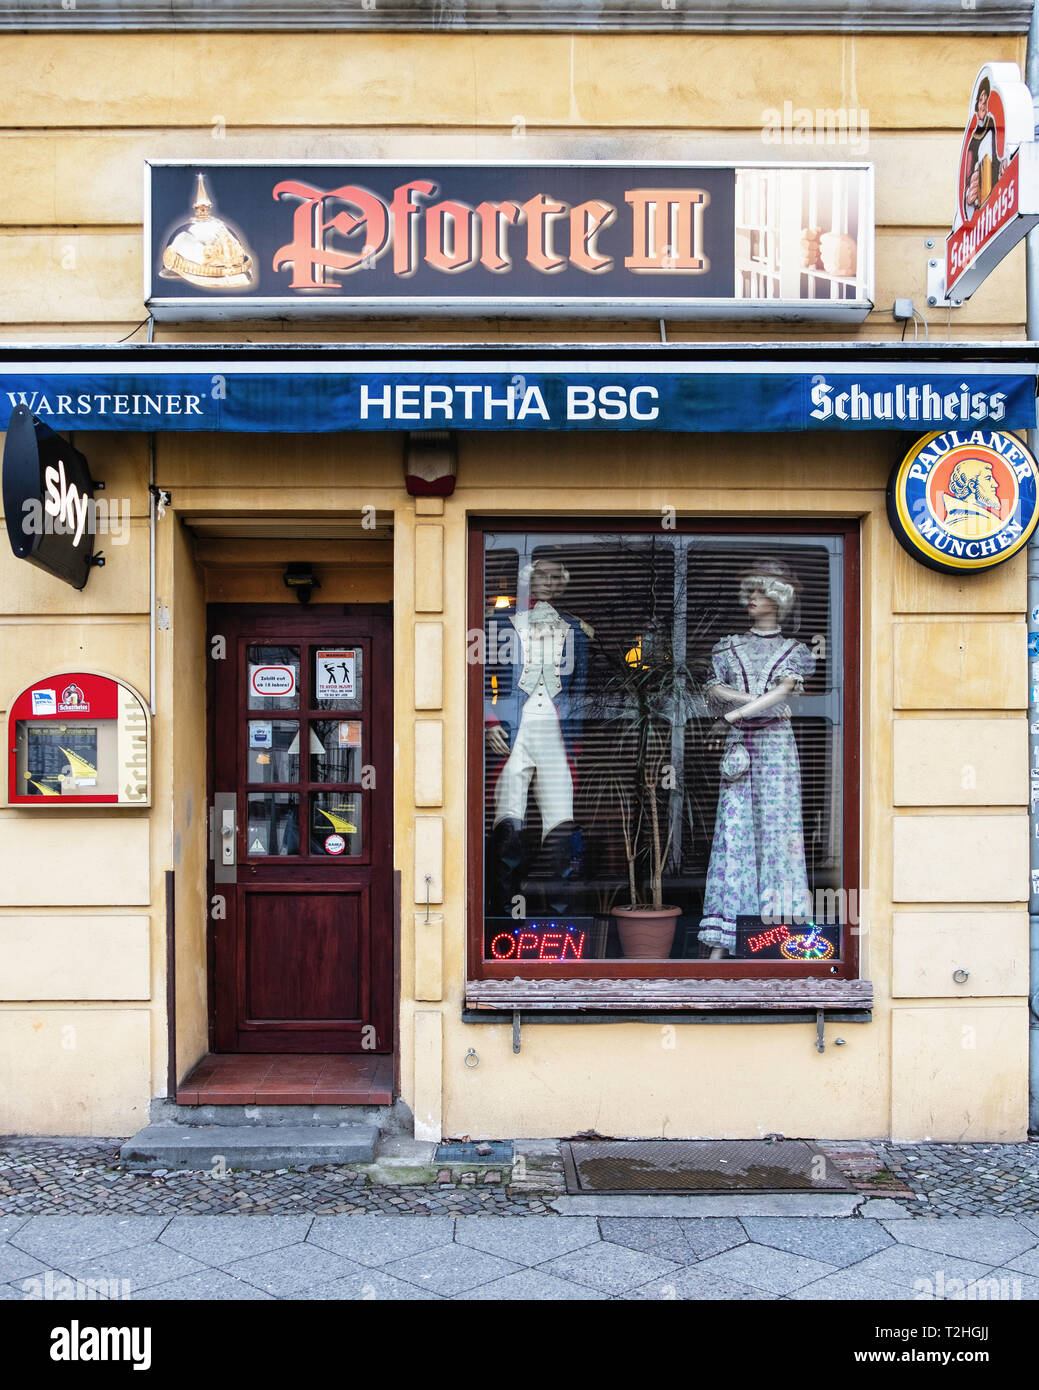 Pforte lll Traditionelle alte Bar. Außenansicht mit Modellen im Zeitraum Kleid in Fenster. Moabit-Berlin Stockfoto